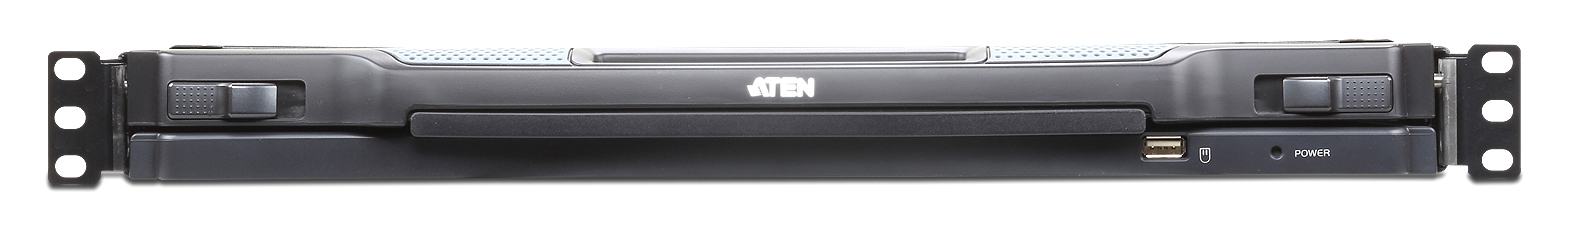 Aten CL5716IM 16 port Combo 1U Slideway 17in LCD KVMP Switch